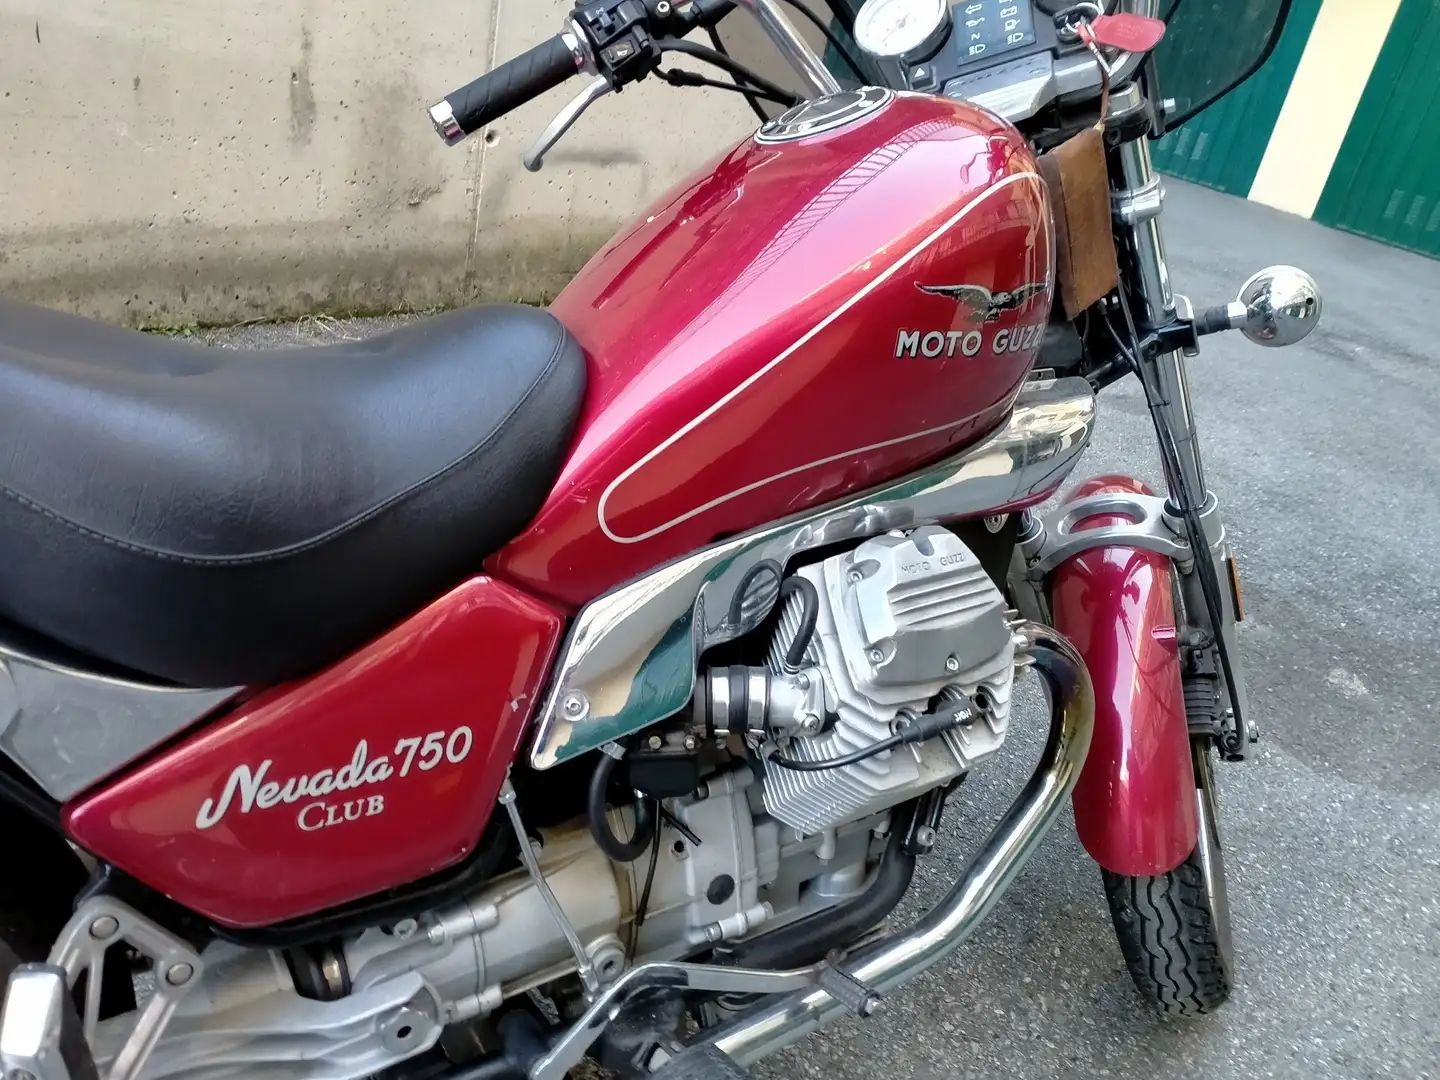 Moto Guzzi Nevada club Rosso - 1